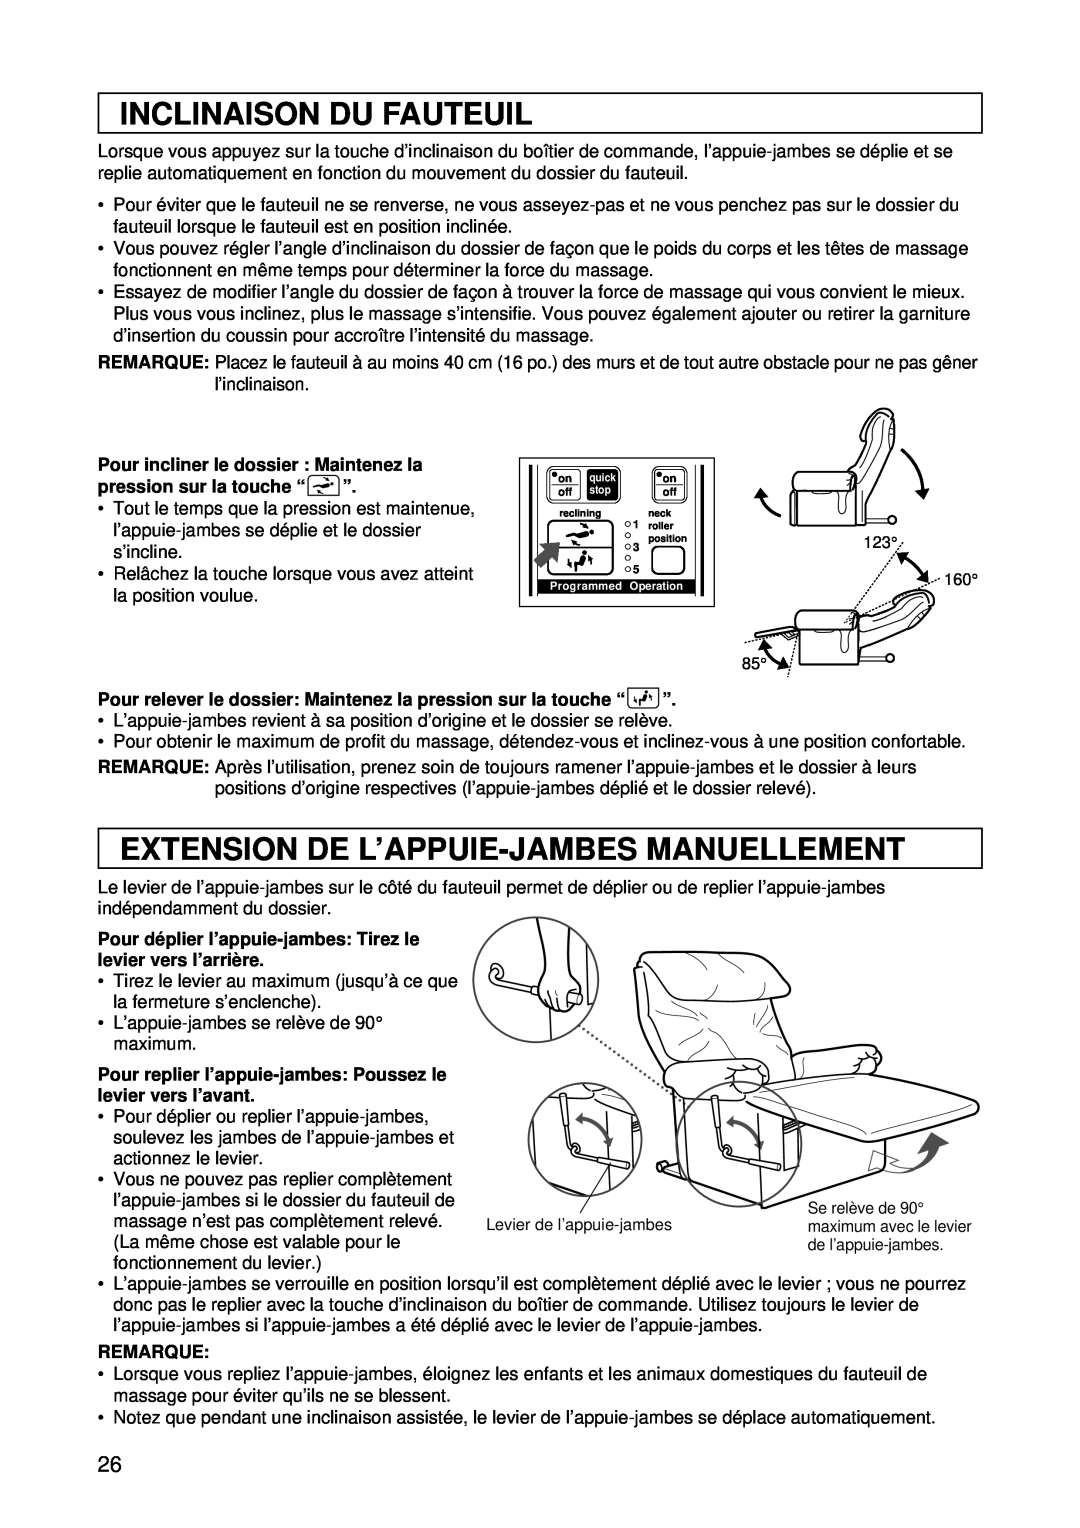 Panasonic EP1015 Inclinaison Du Fauteuil, Extension De L’Appuie-Jambesmanuellement, Pour incliner le dossier Maintenez la 